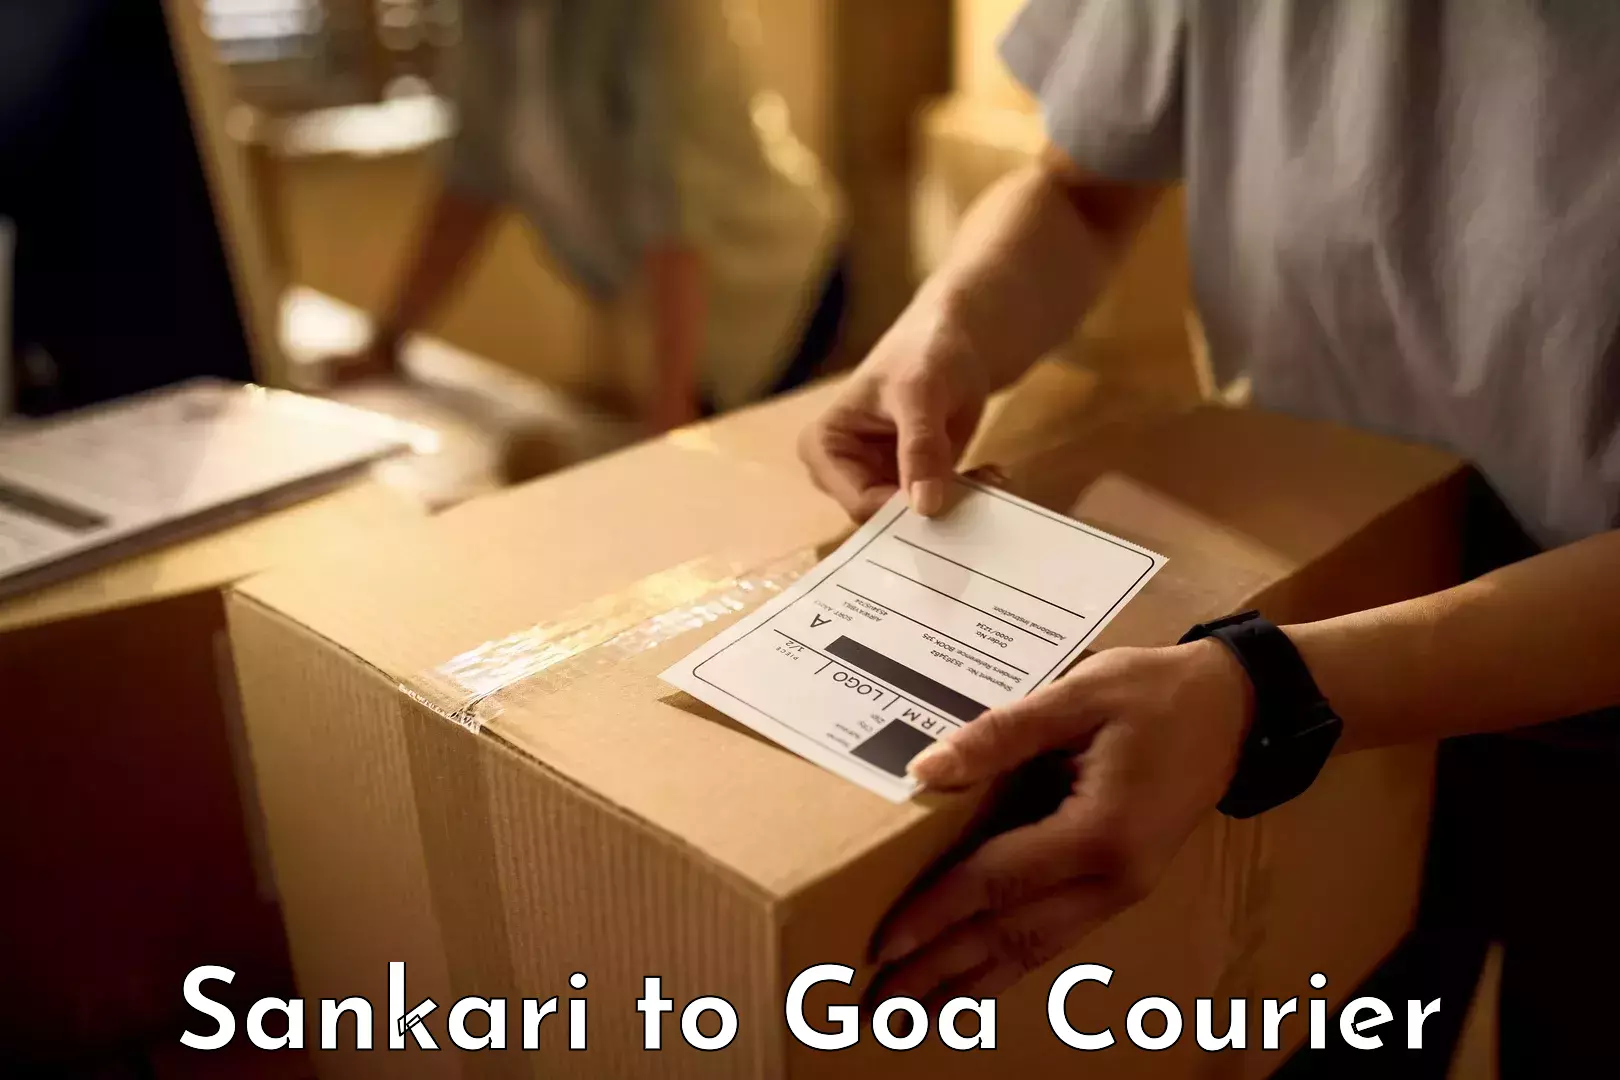 Luggage transfer service Sankari to Goa